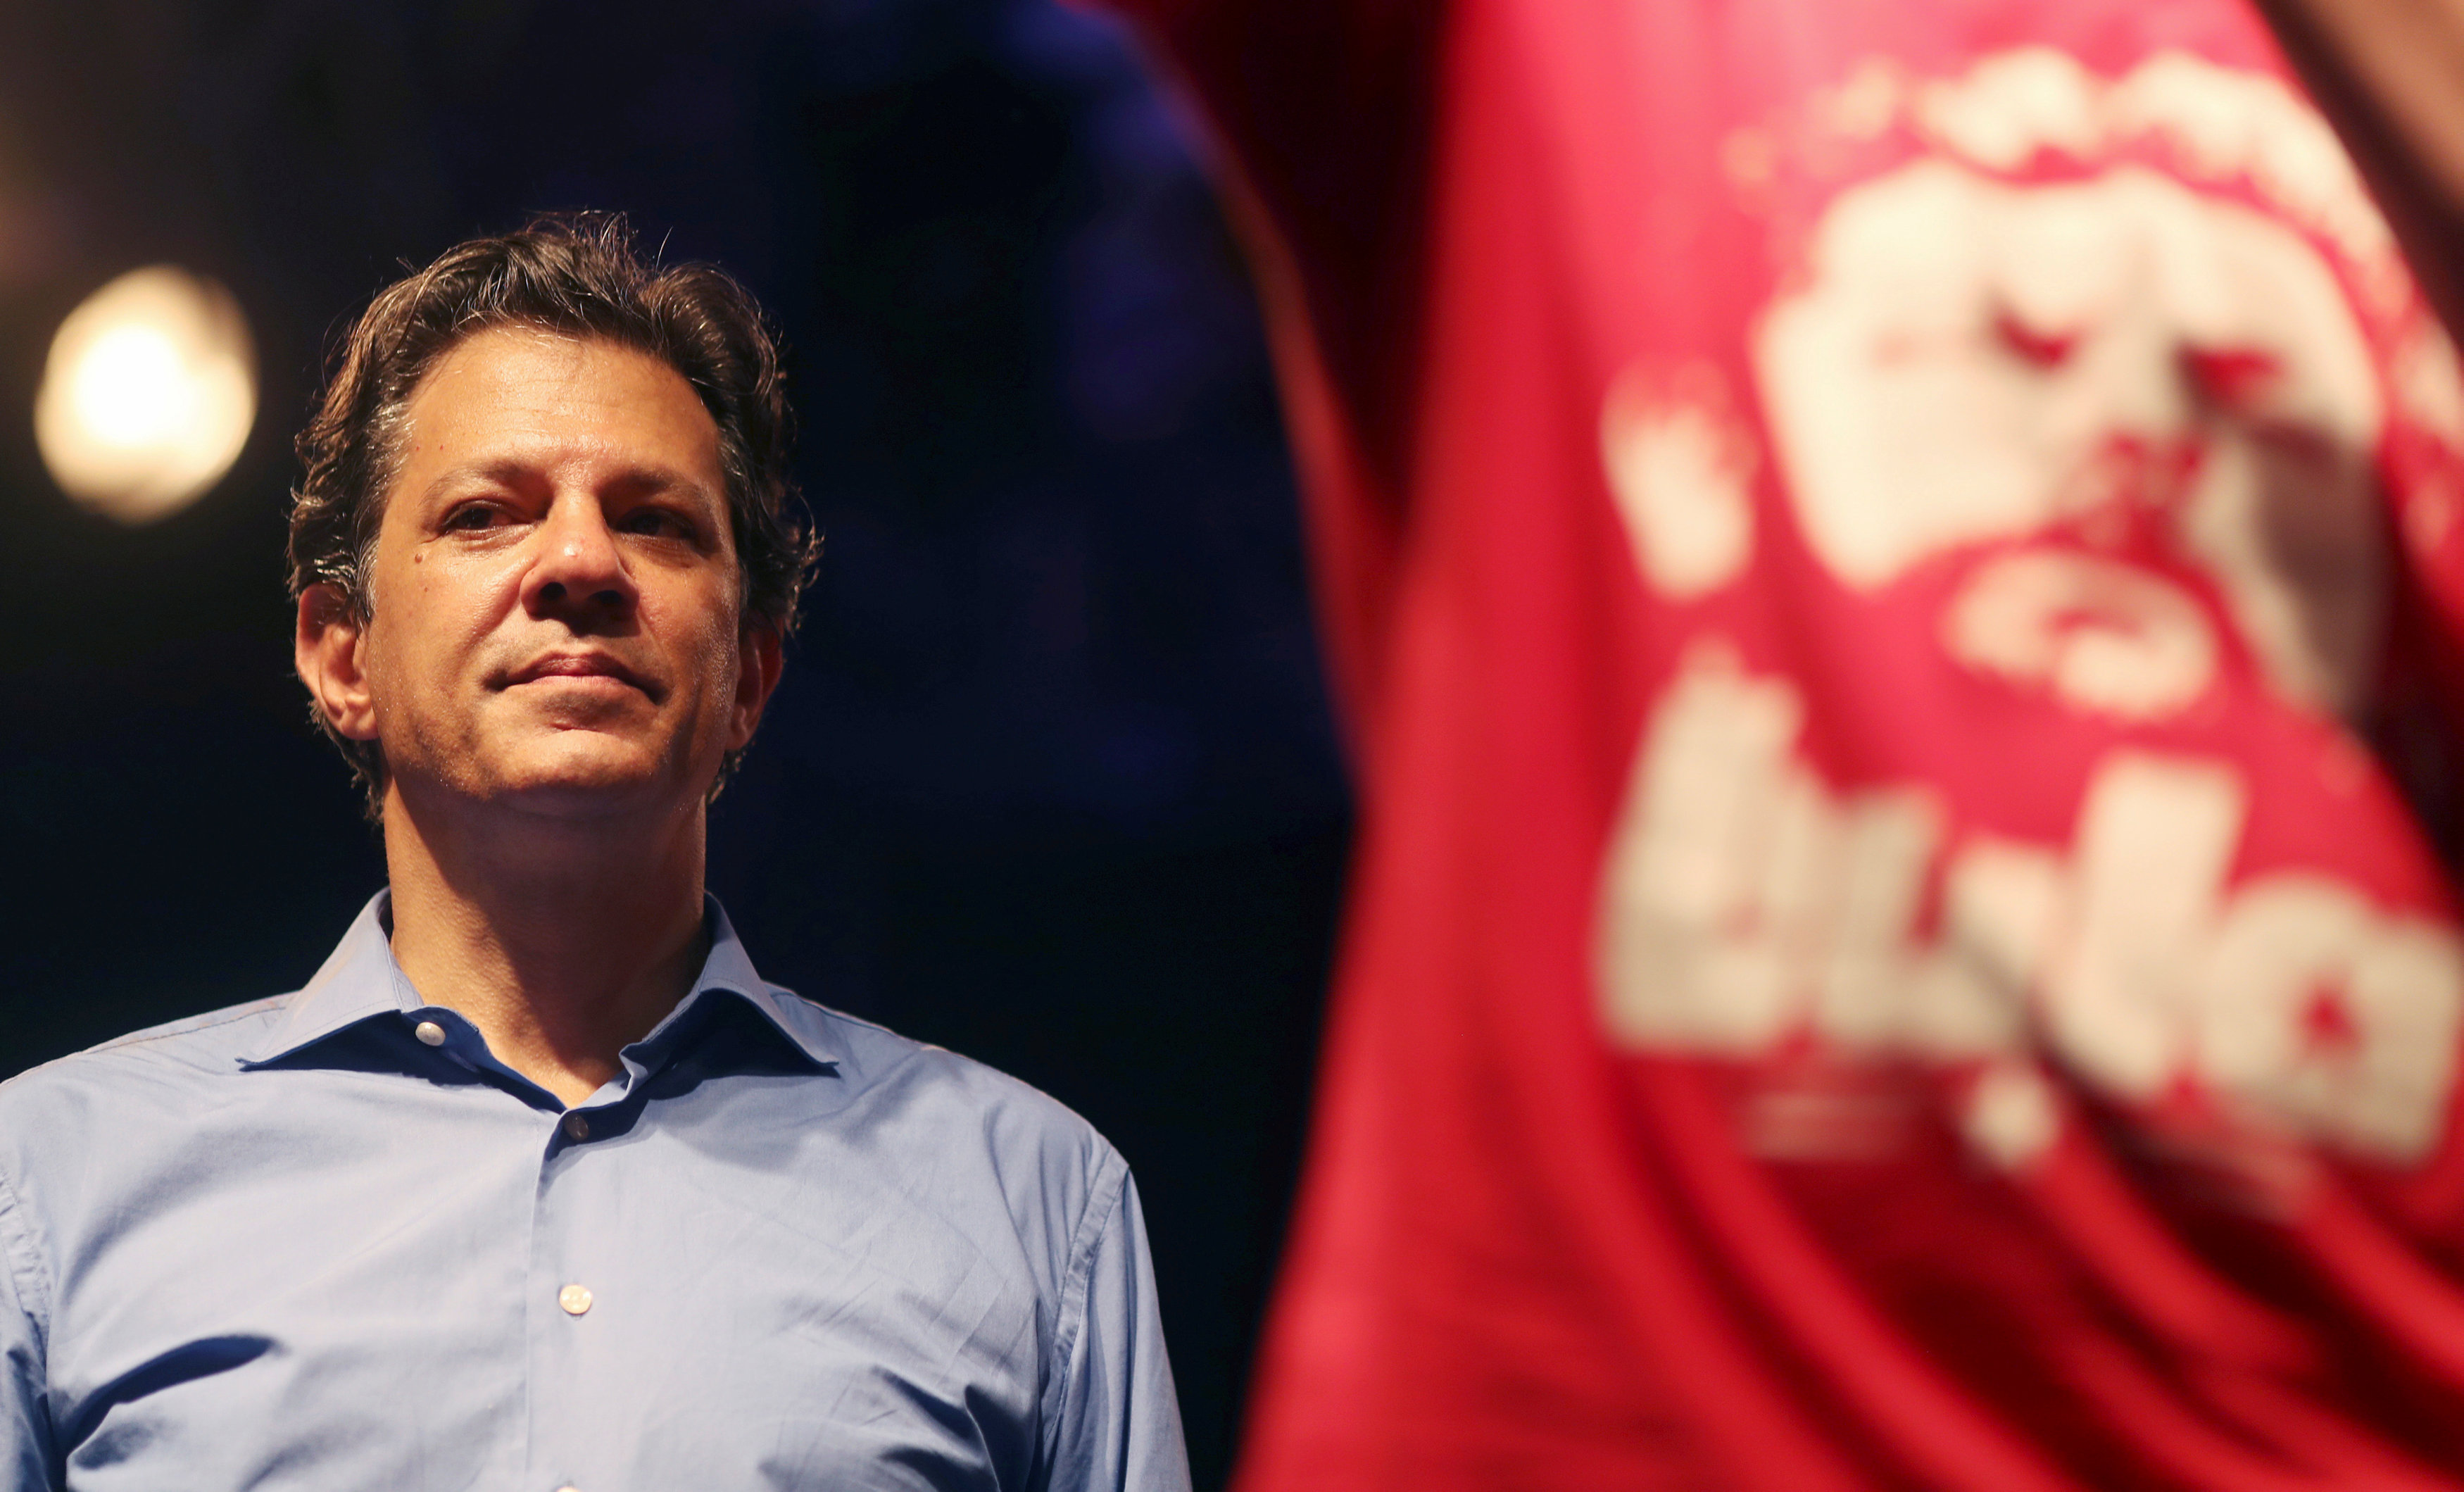 El candidato presidencial brasileño por el Partido de los Trabajadores, Fernando Haddad, enfatizó que las políticas públicas pretendidas por Jair Bolsonaro son autoritarias.